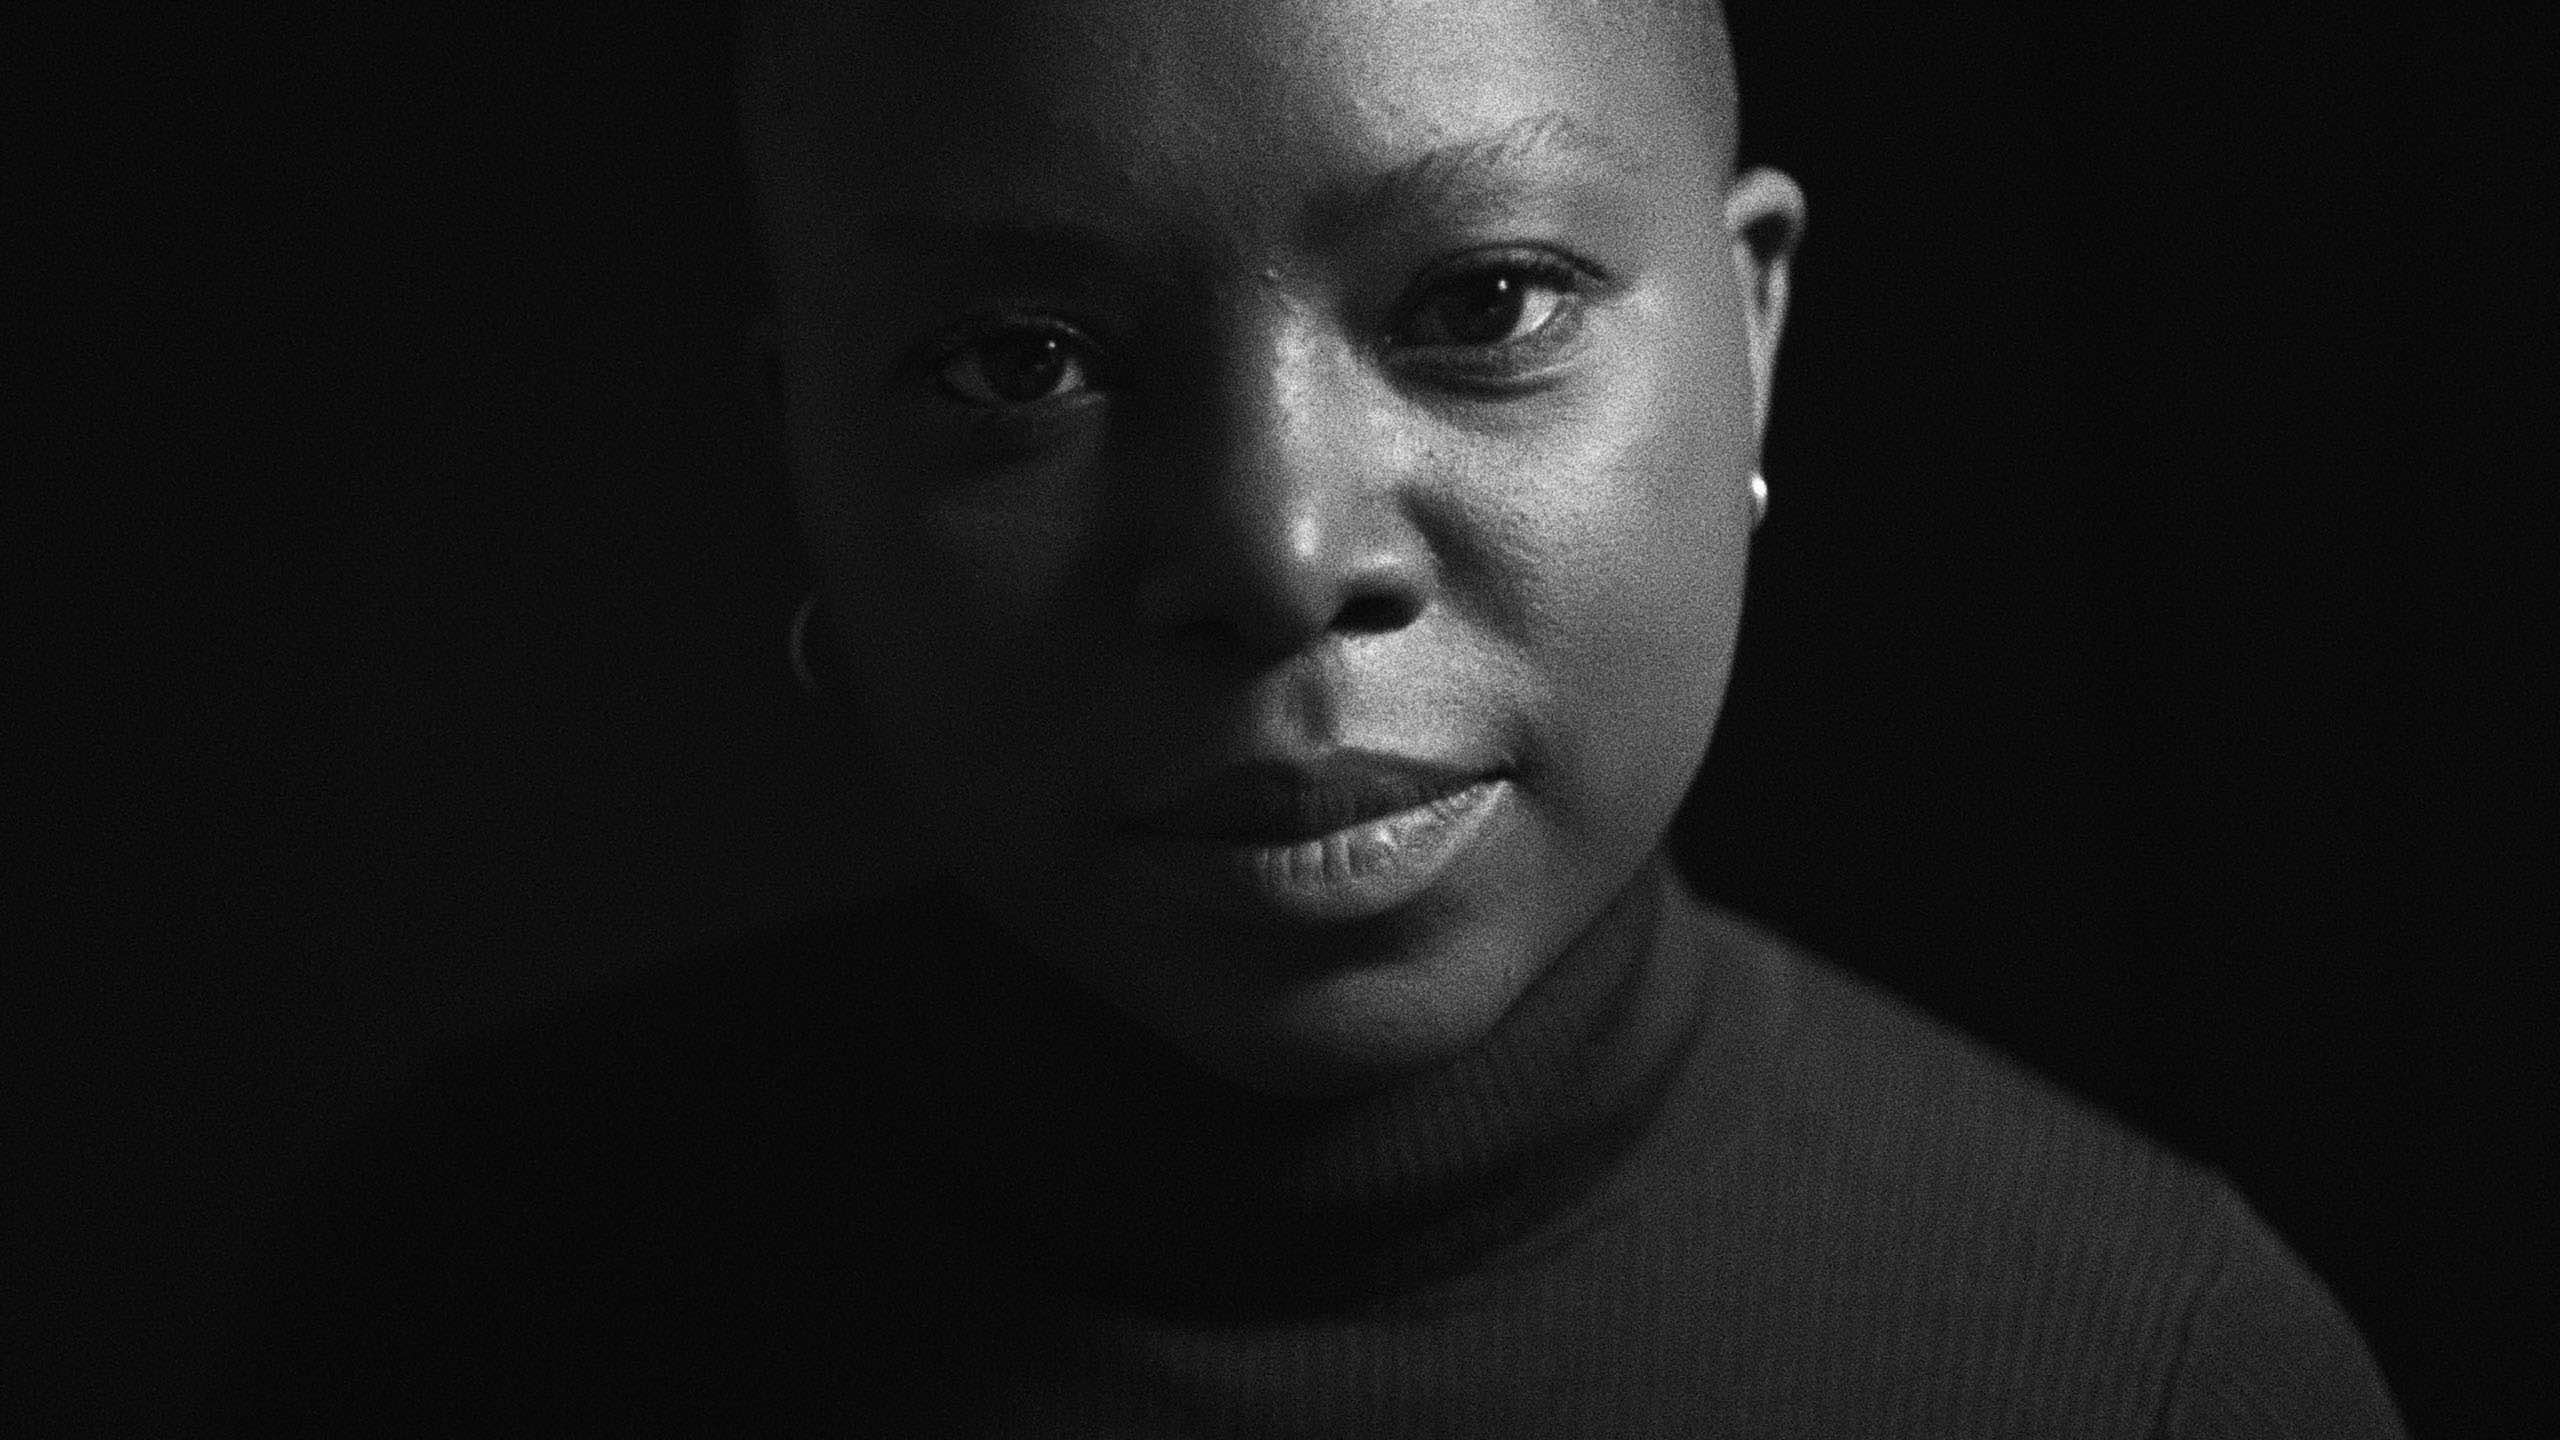 Personal and political: Bongela examines her upbringing in Milisuthando / Photo courtesy of Sundance Institute